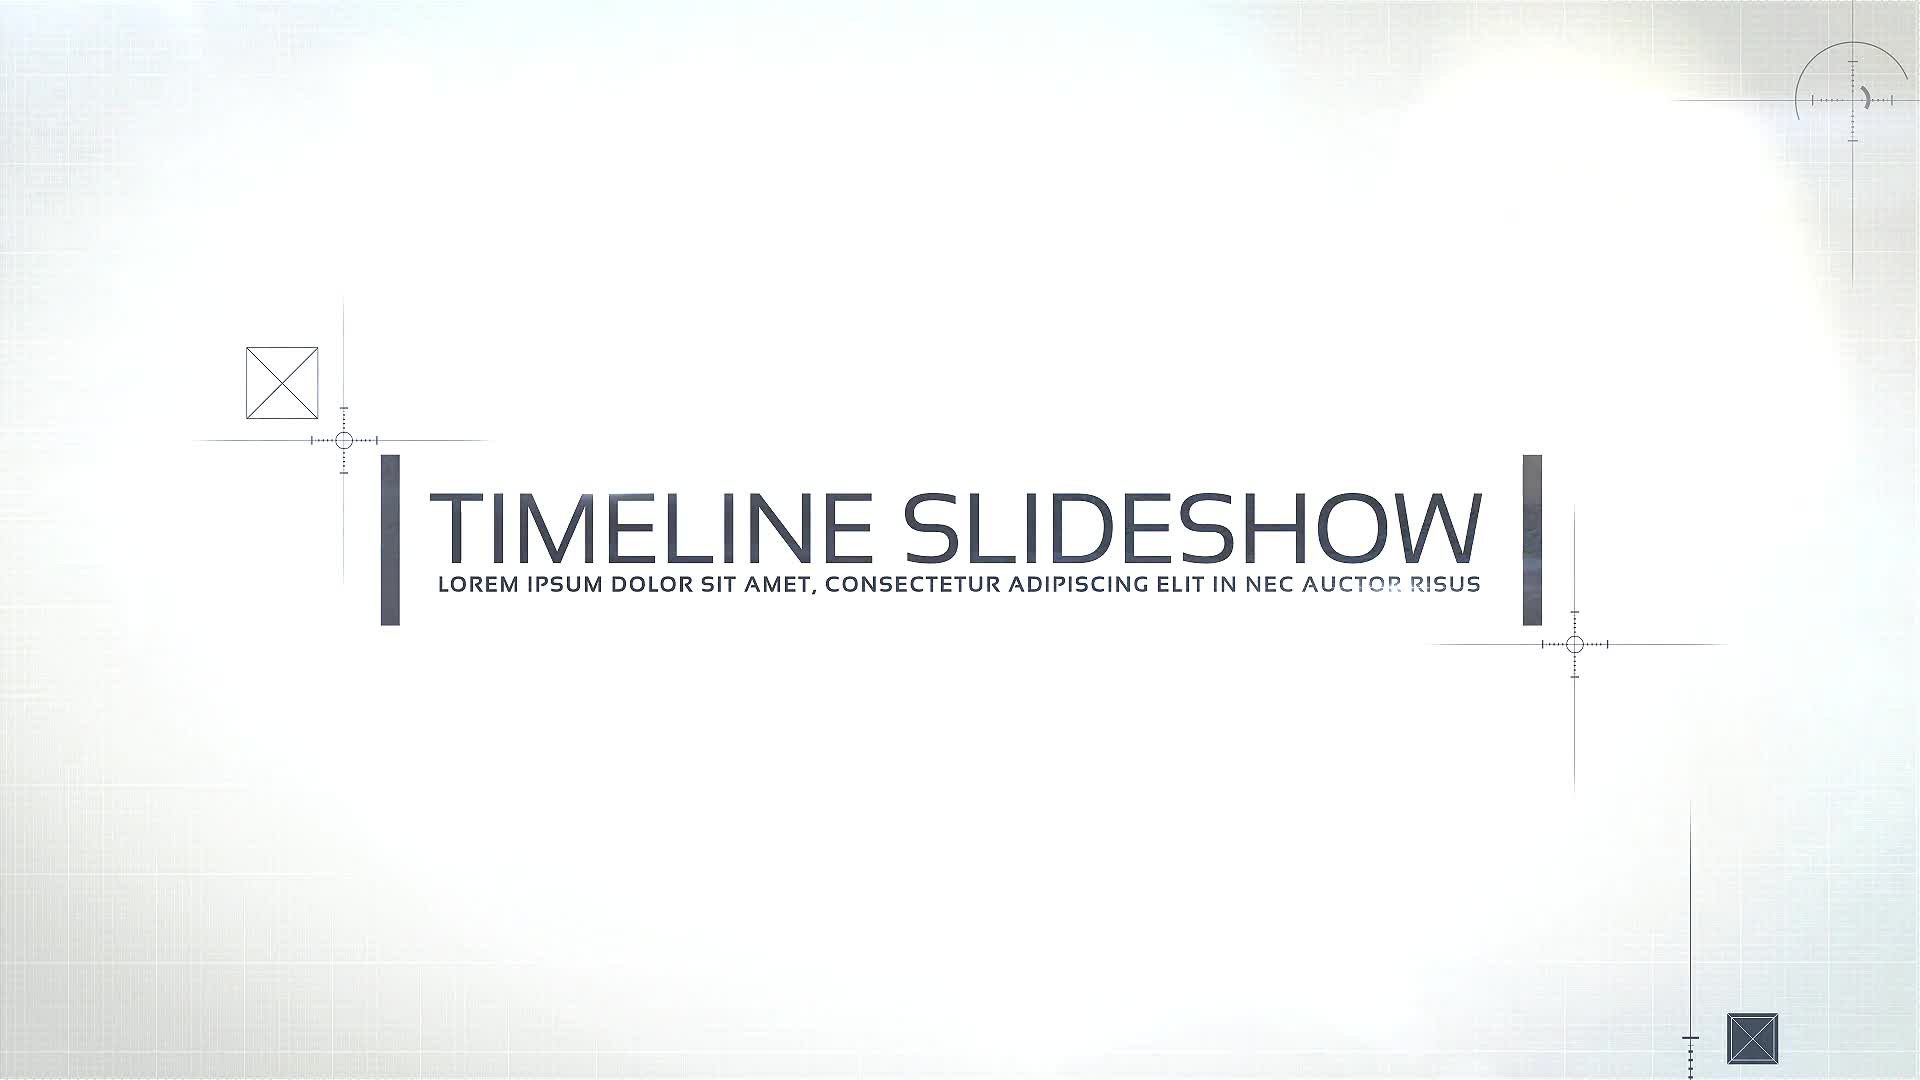 Timeline Corporate Videohive 33714239 Premiere Pro Image 1